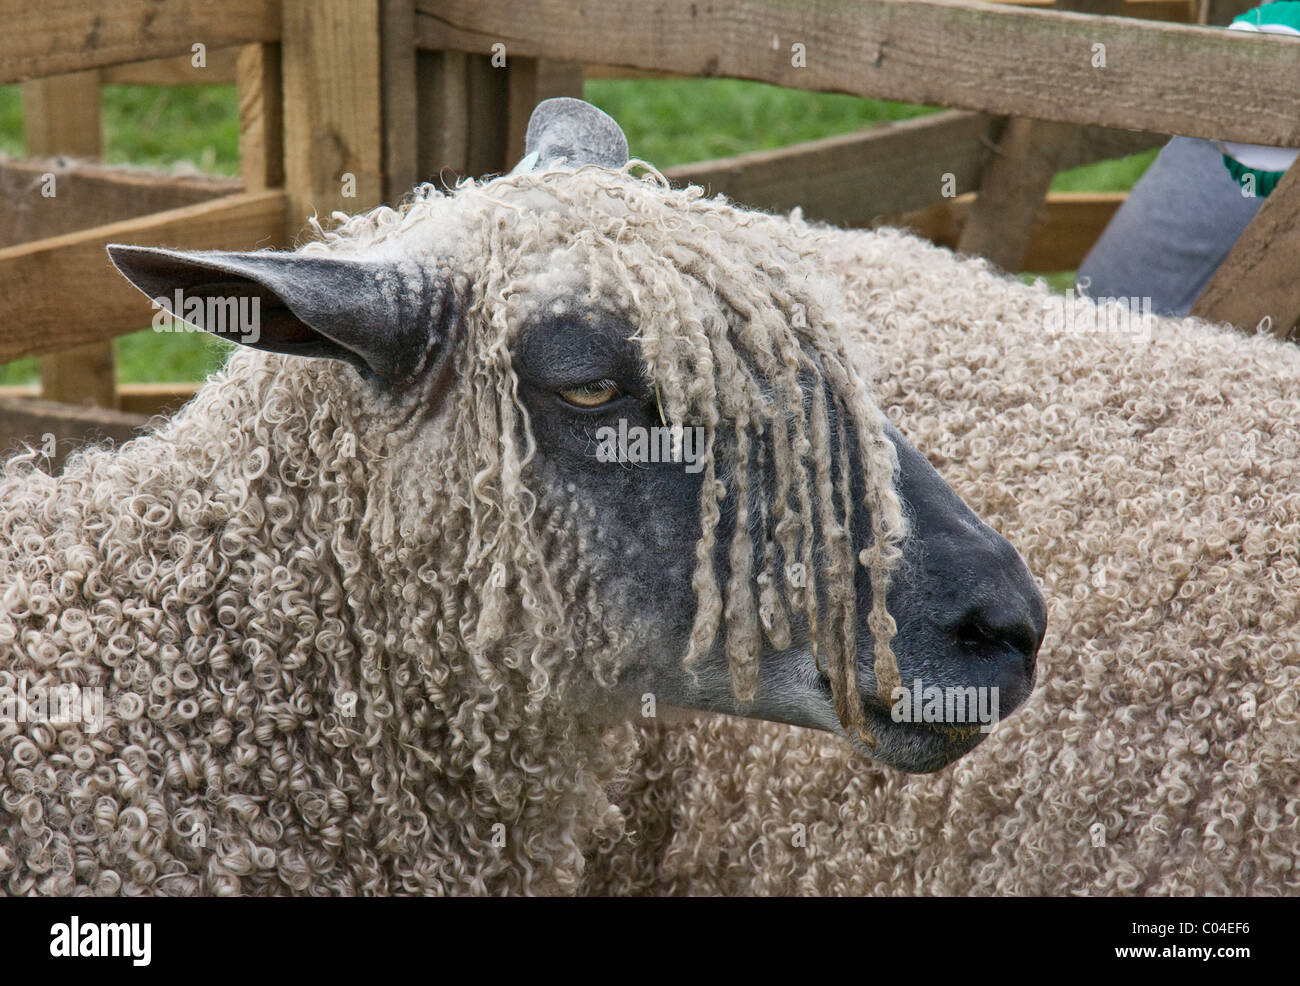 Race de mouton Wensleydale (ewe) dans l'appréciation stylo à Wensleydale Comice agricole, Leyburn, North Yorkshire Banque D'Images